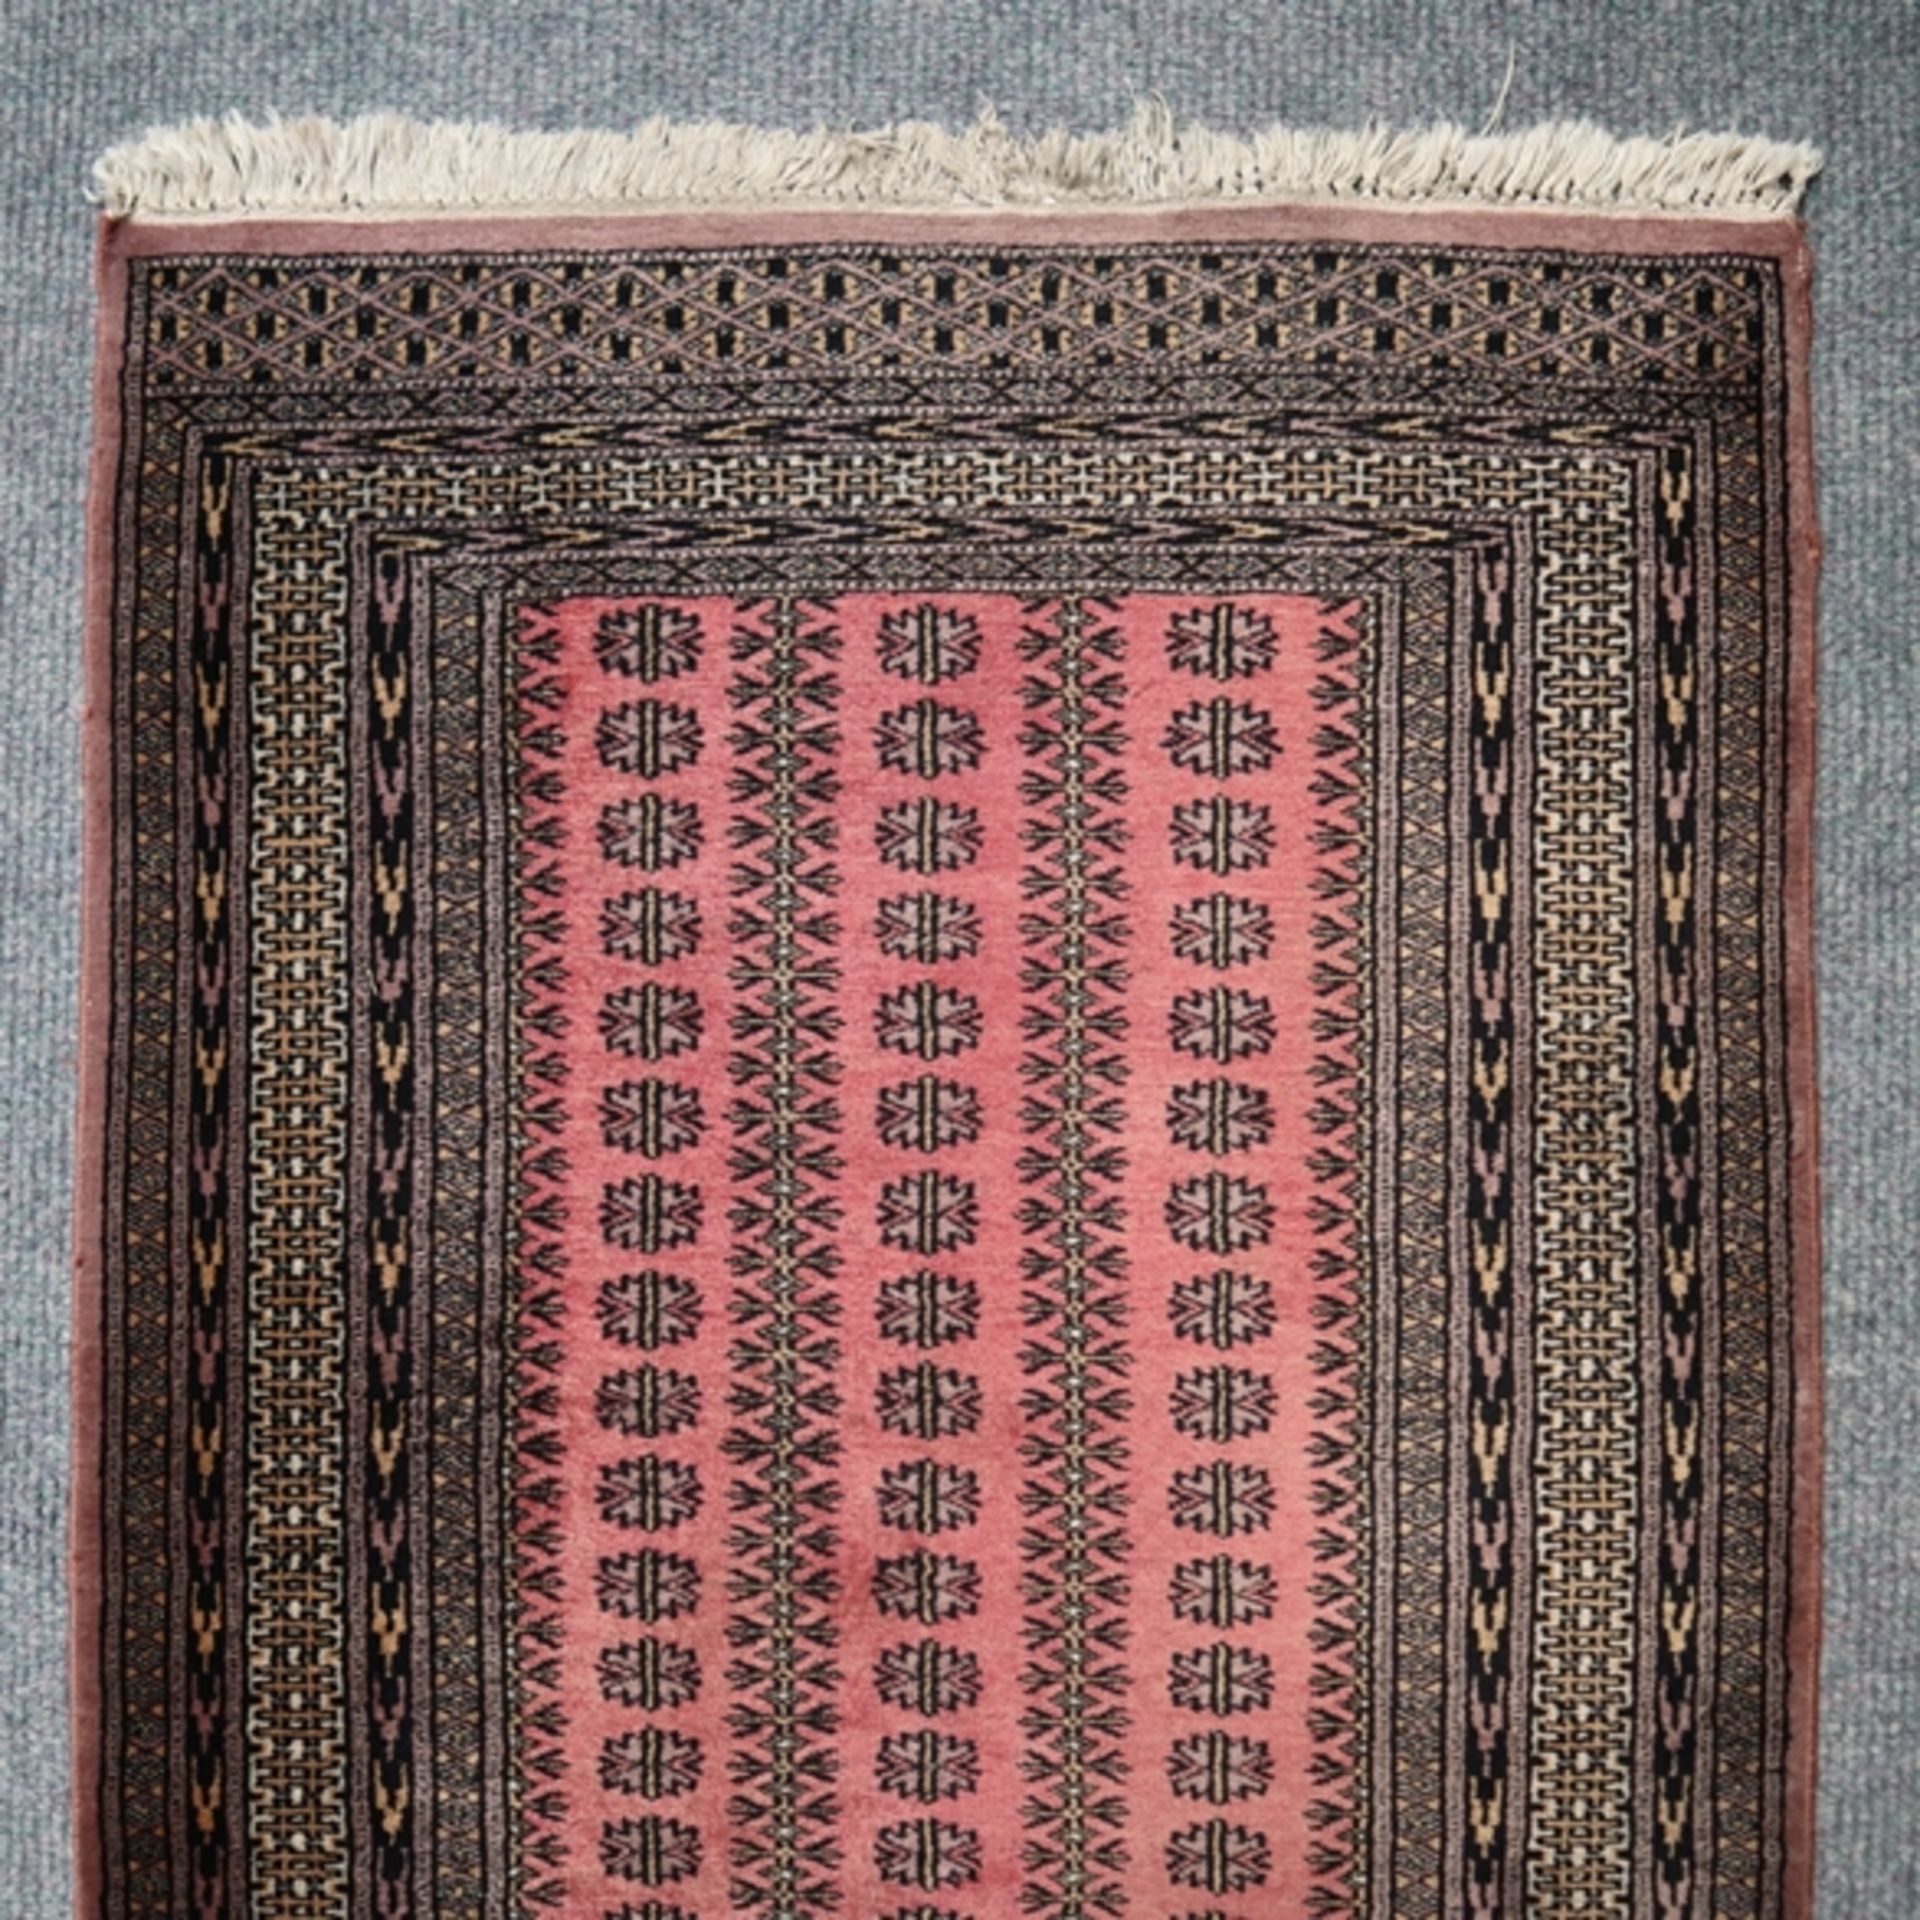 Buchara-Läufer - Pakistan, 20. Jh., Wolle, ornamental gemustert, ca. 265 x 82 cm, Gebrauchsspuren,  - Bild 2 aus 7